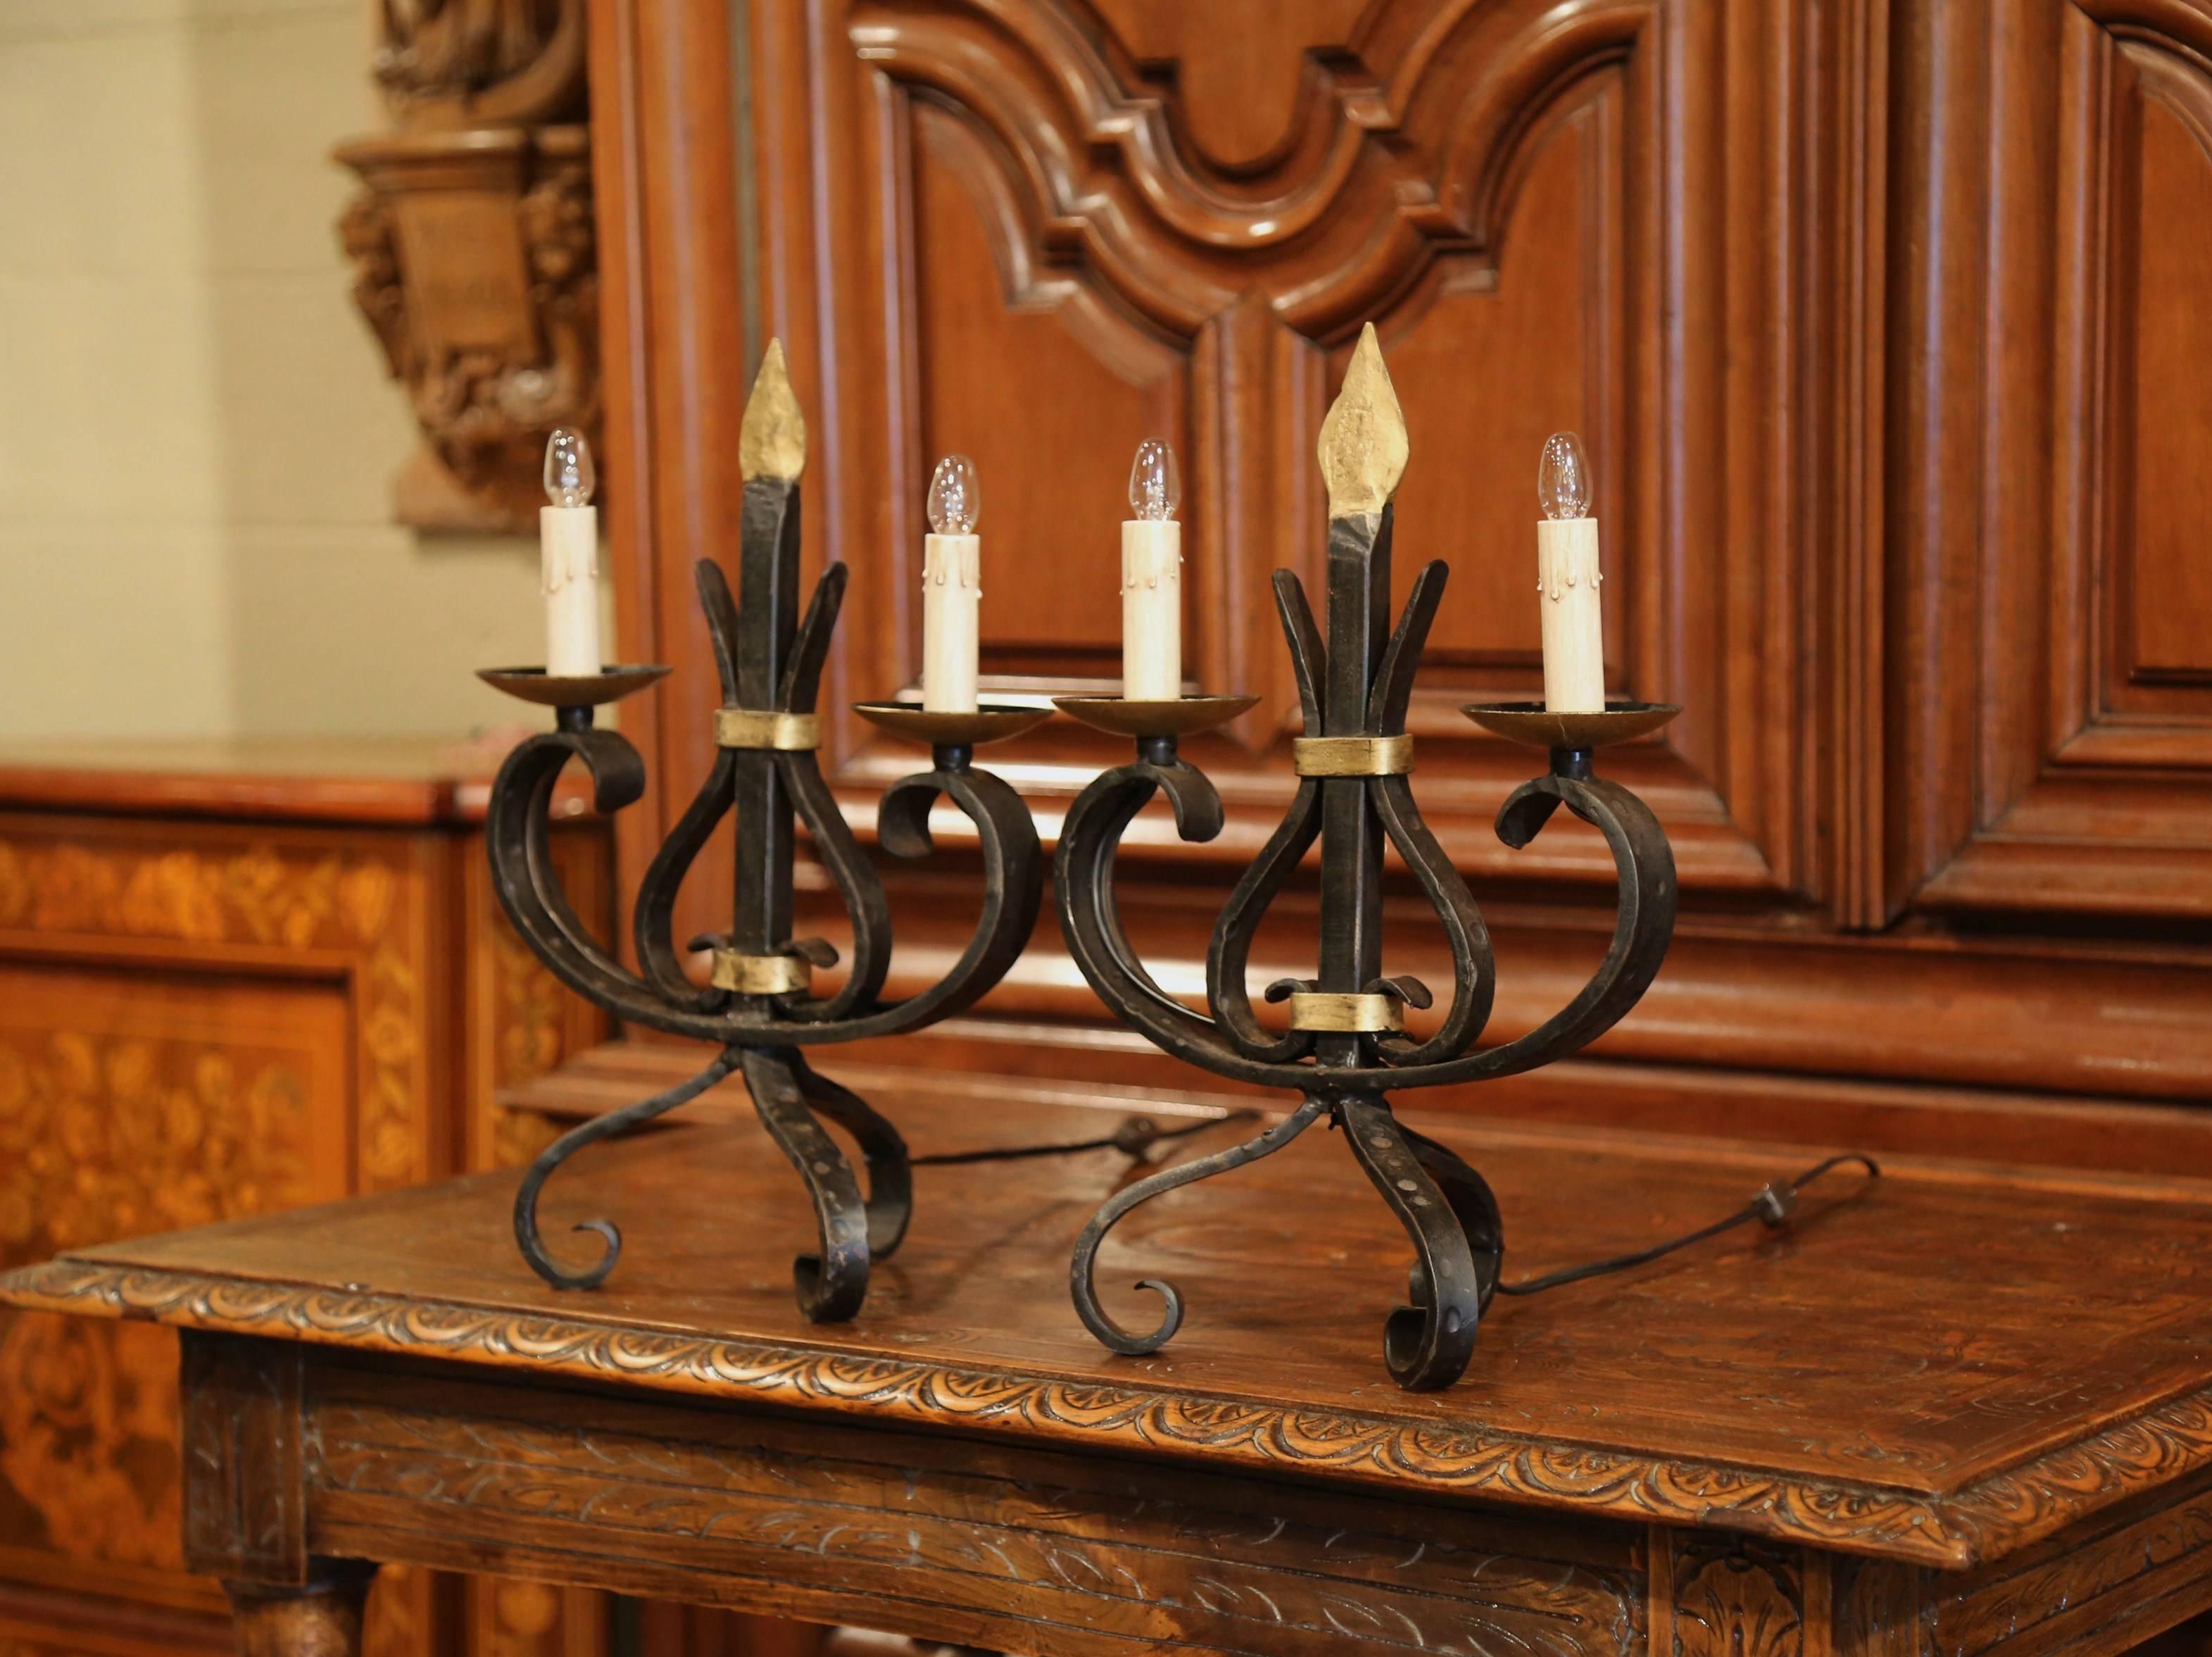 Elegante paire de candélabres gothiques anciens du sud de la France, fabriqués vers 1920, les luminaires forgés reposent sur trois jambes incurvées, ils ont deux lumières nouvellement câblées avec un travail de fer orné au centre. Les lampes de